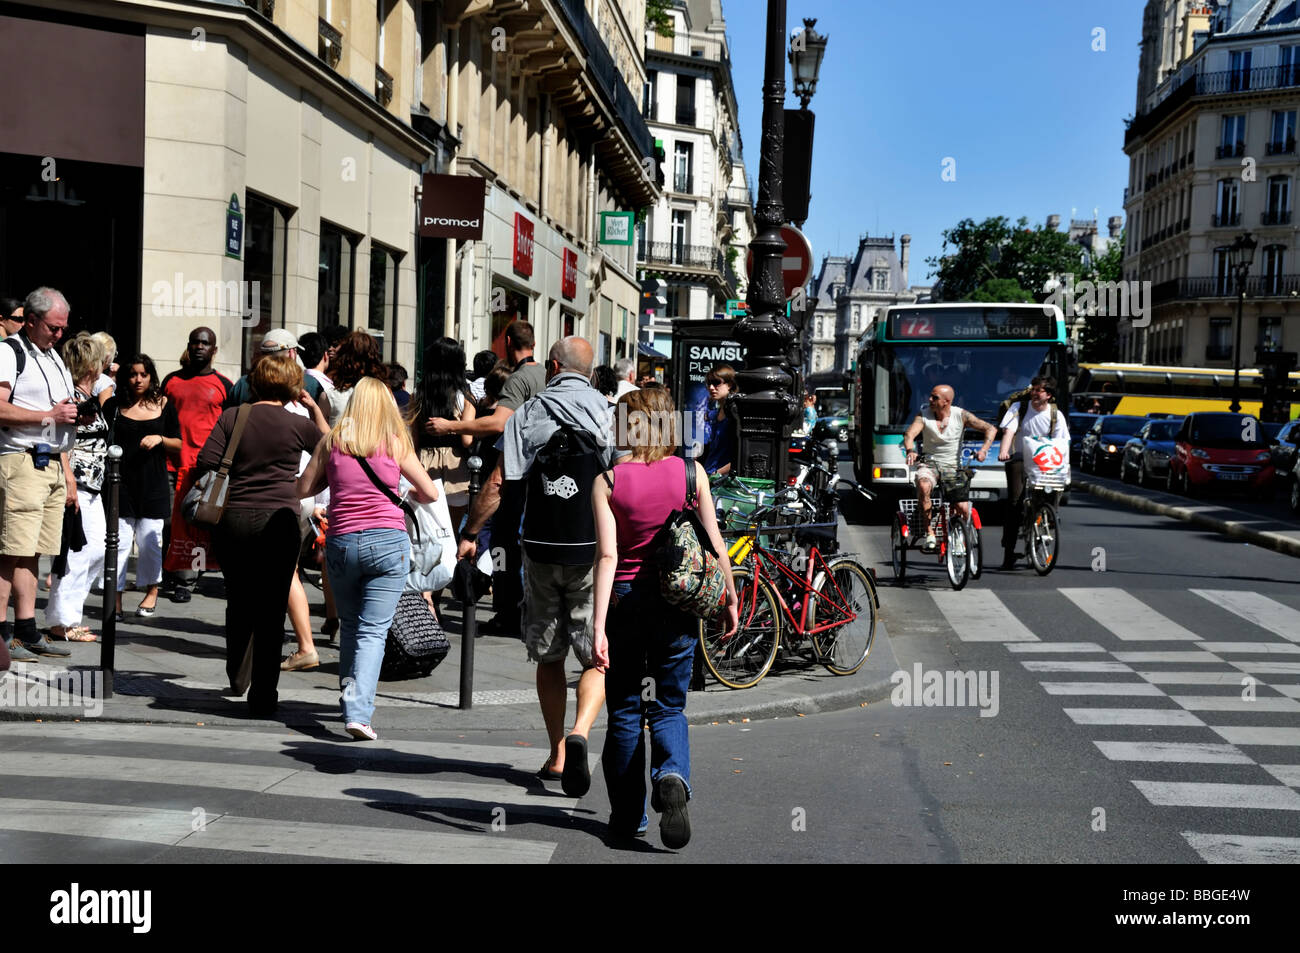 Parigi Francia, Parigi strada affollata pubblico scena gente shopping sulla 'Rue de Rivoli' Centro Città, persone per le strade di Parigi, negozi, vivace Foto Stock